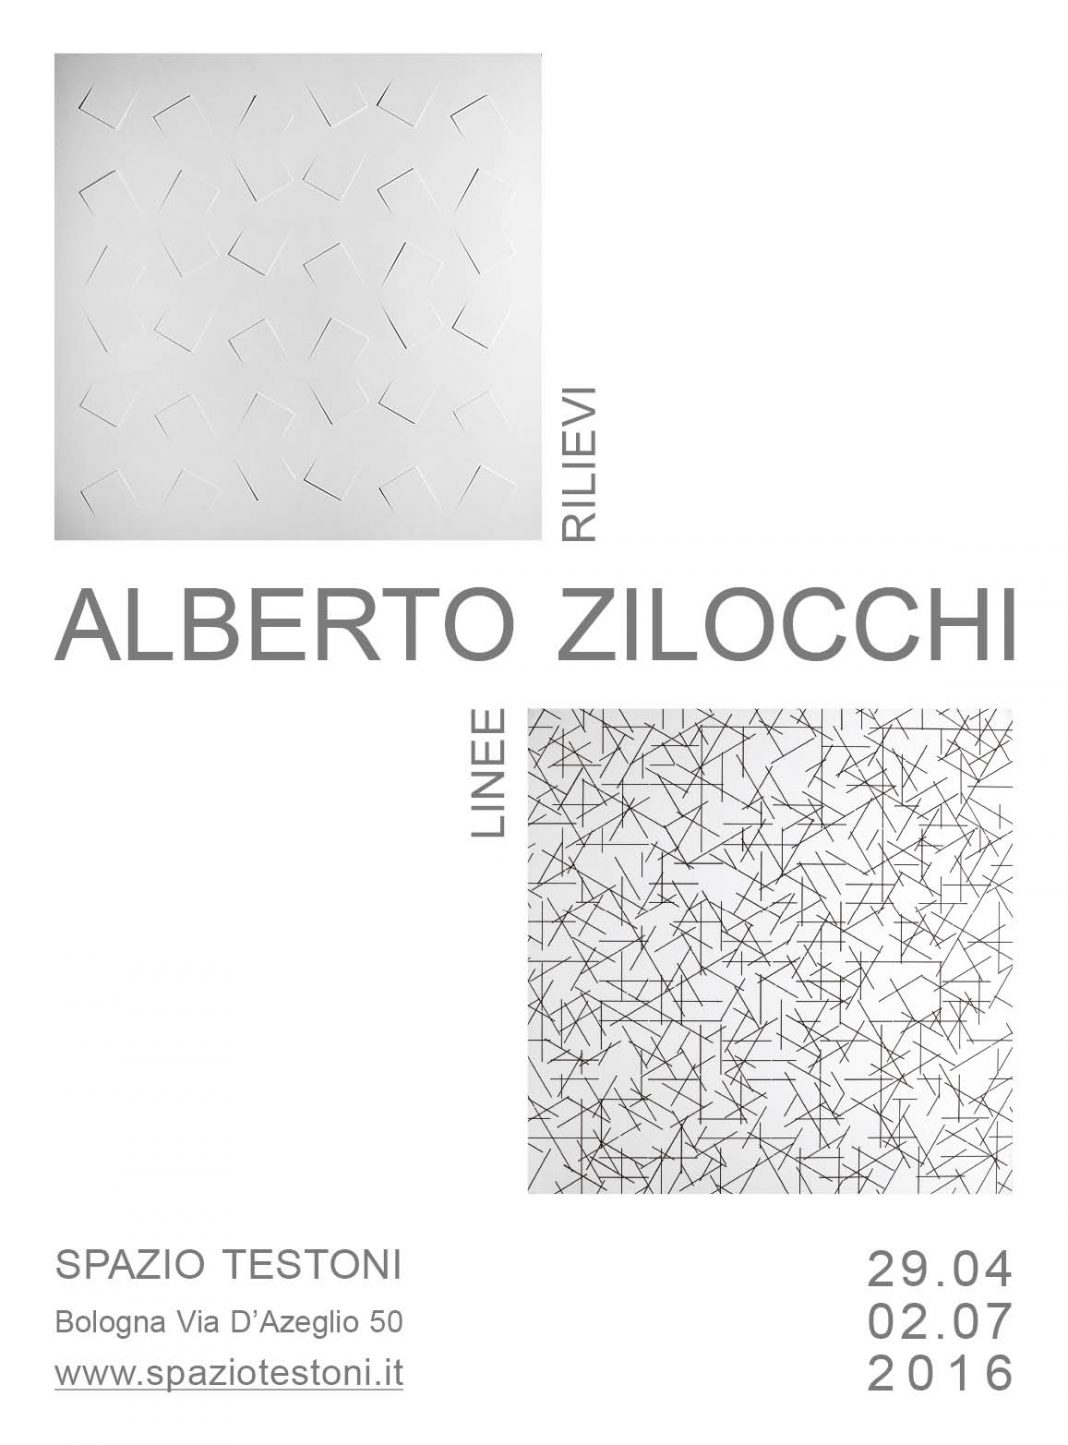 Alberto Zilocchi – Rilievi e Lineehttps://www.exibart.com/repository/media/eventi/2016/04/alberto-zilocchi-–-rilievi-e-linee-1068x1445.jpg